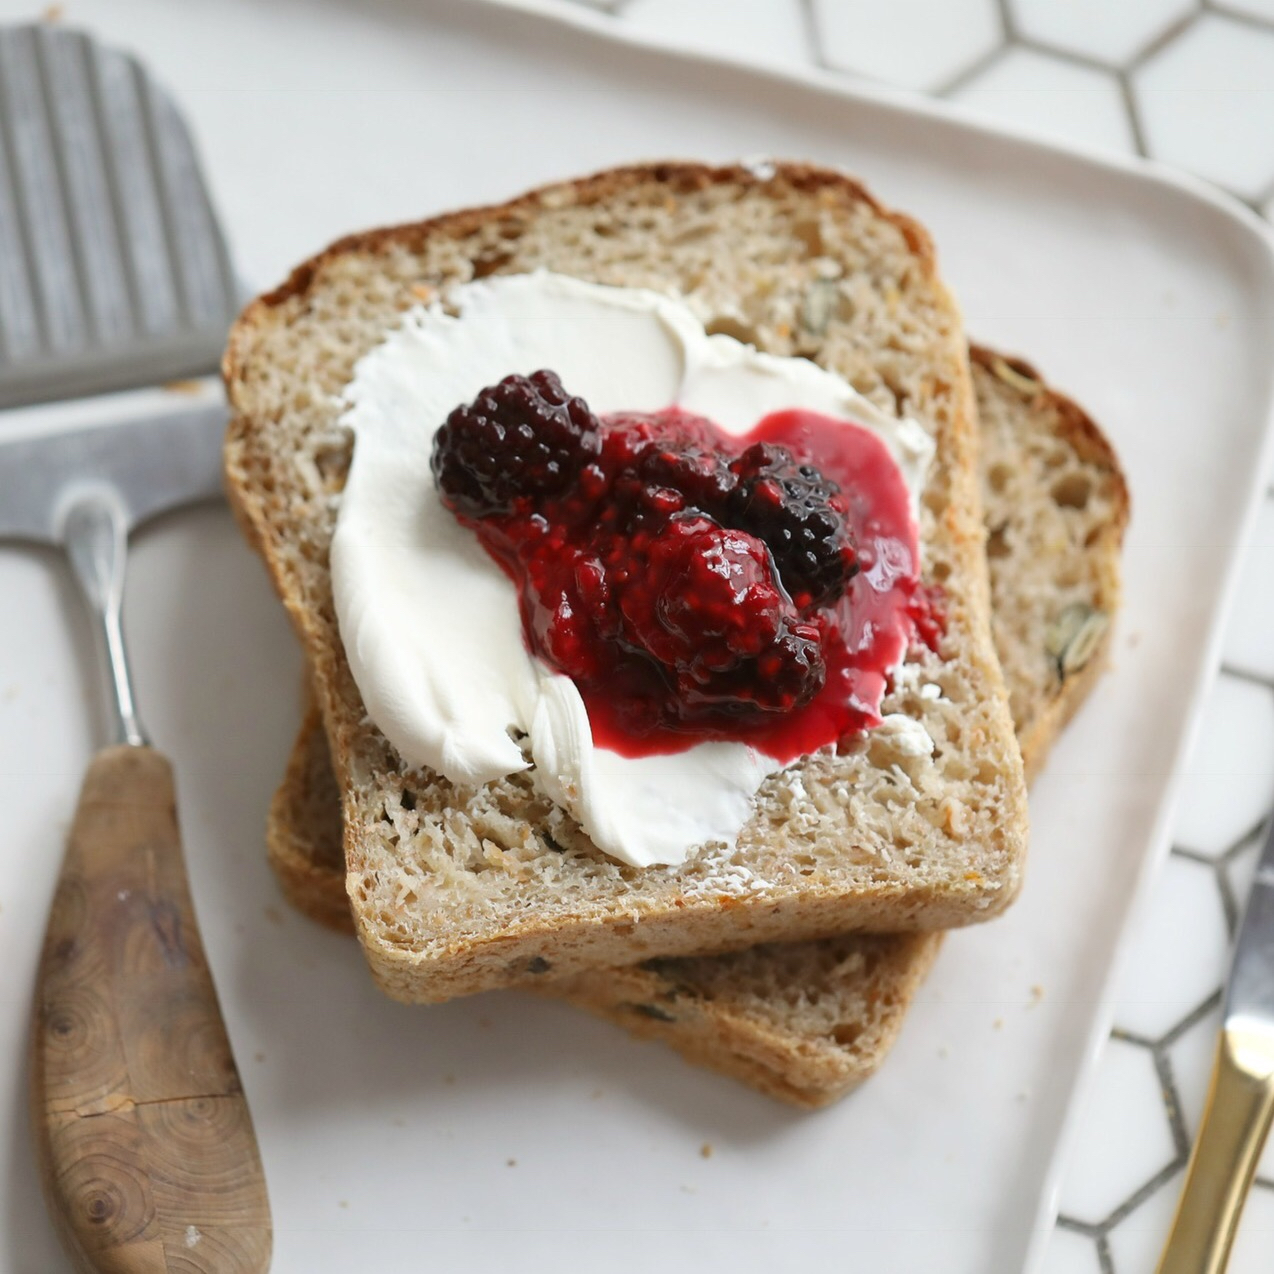 Norwegian Breakfast Bread with Homemade Jam